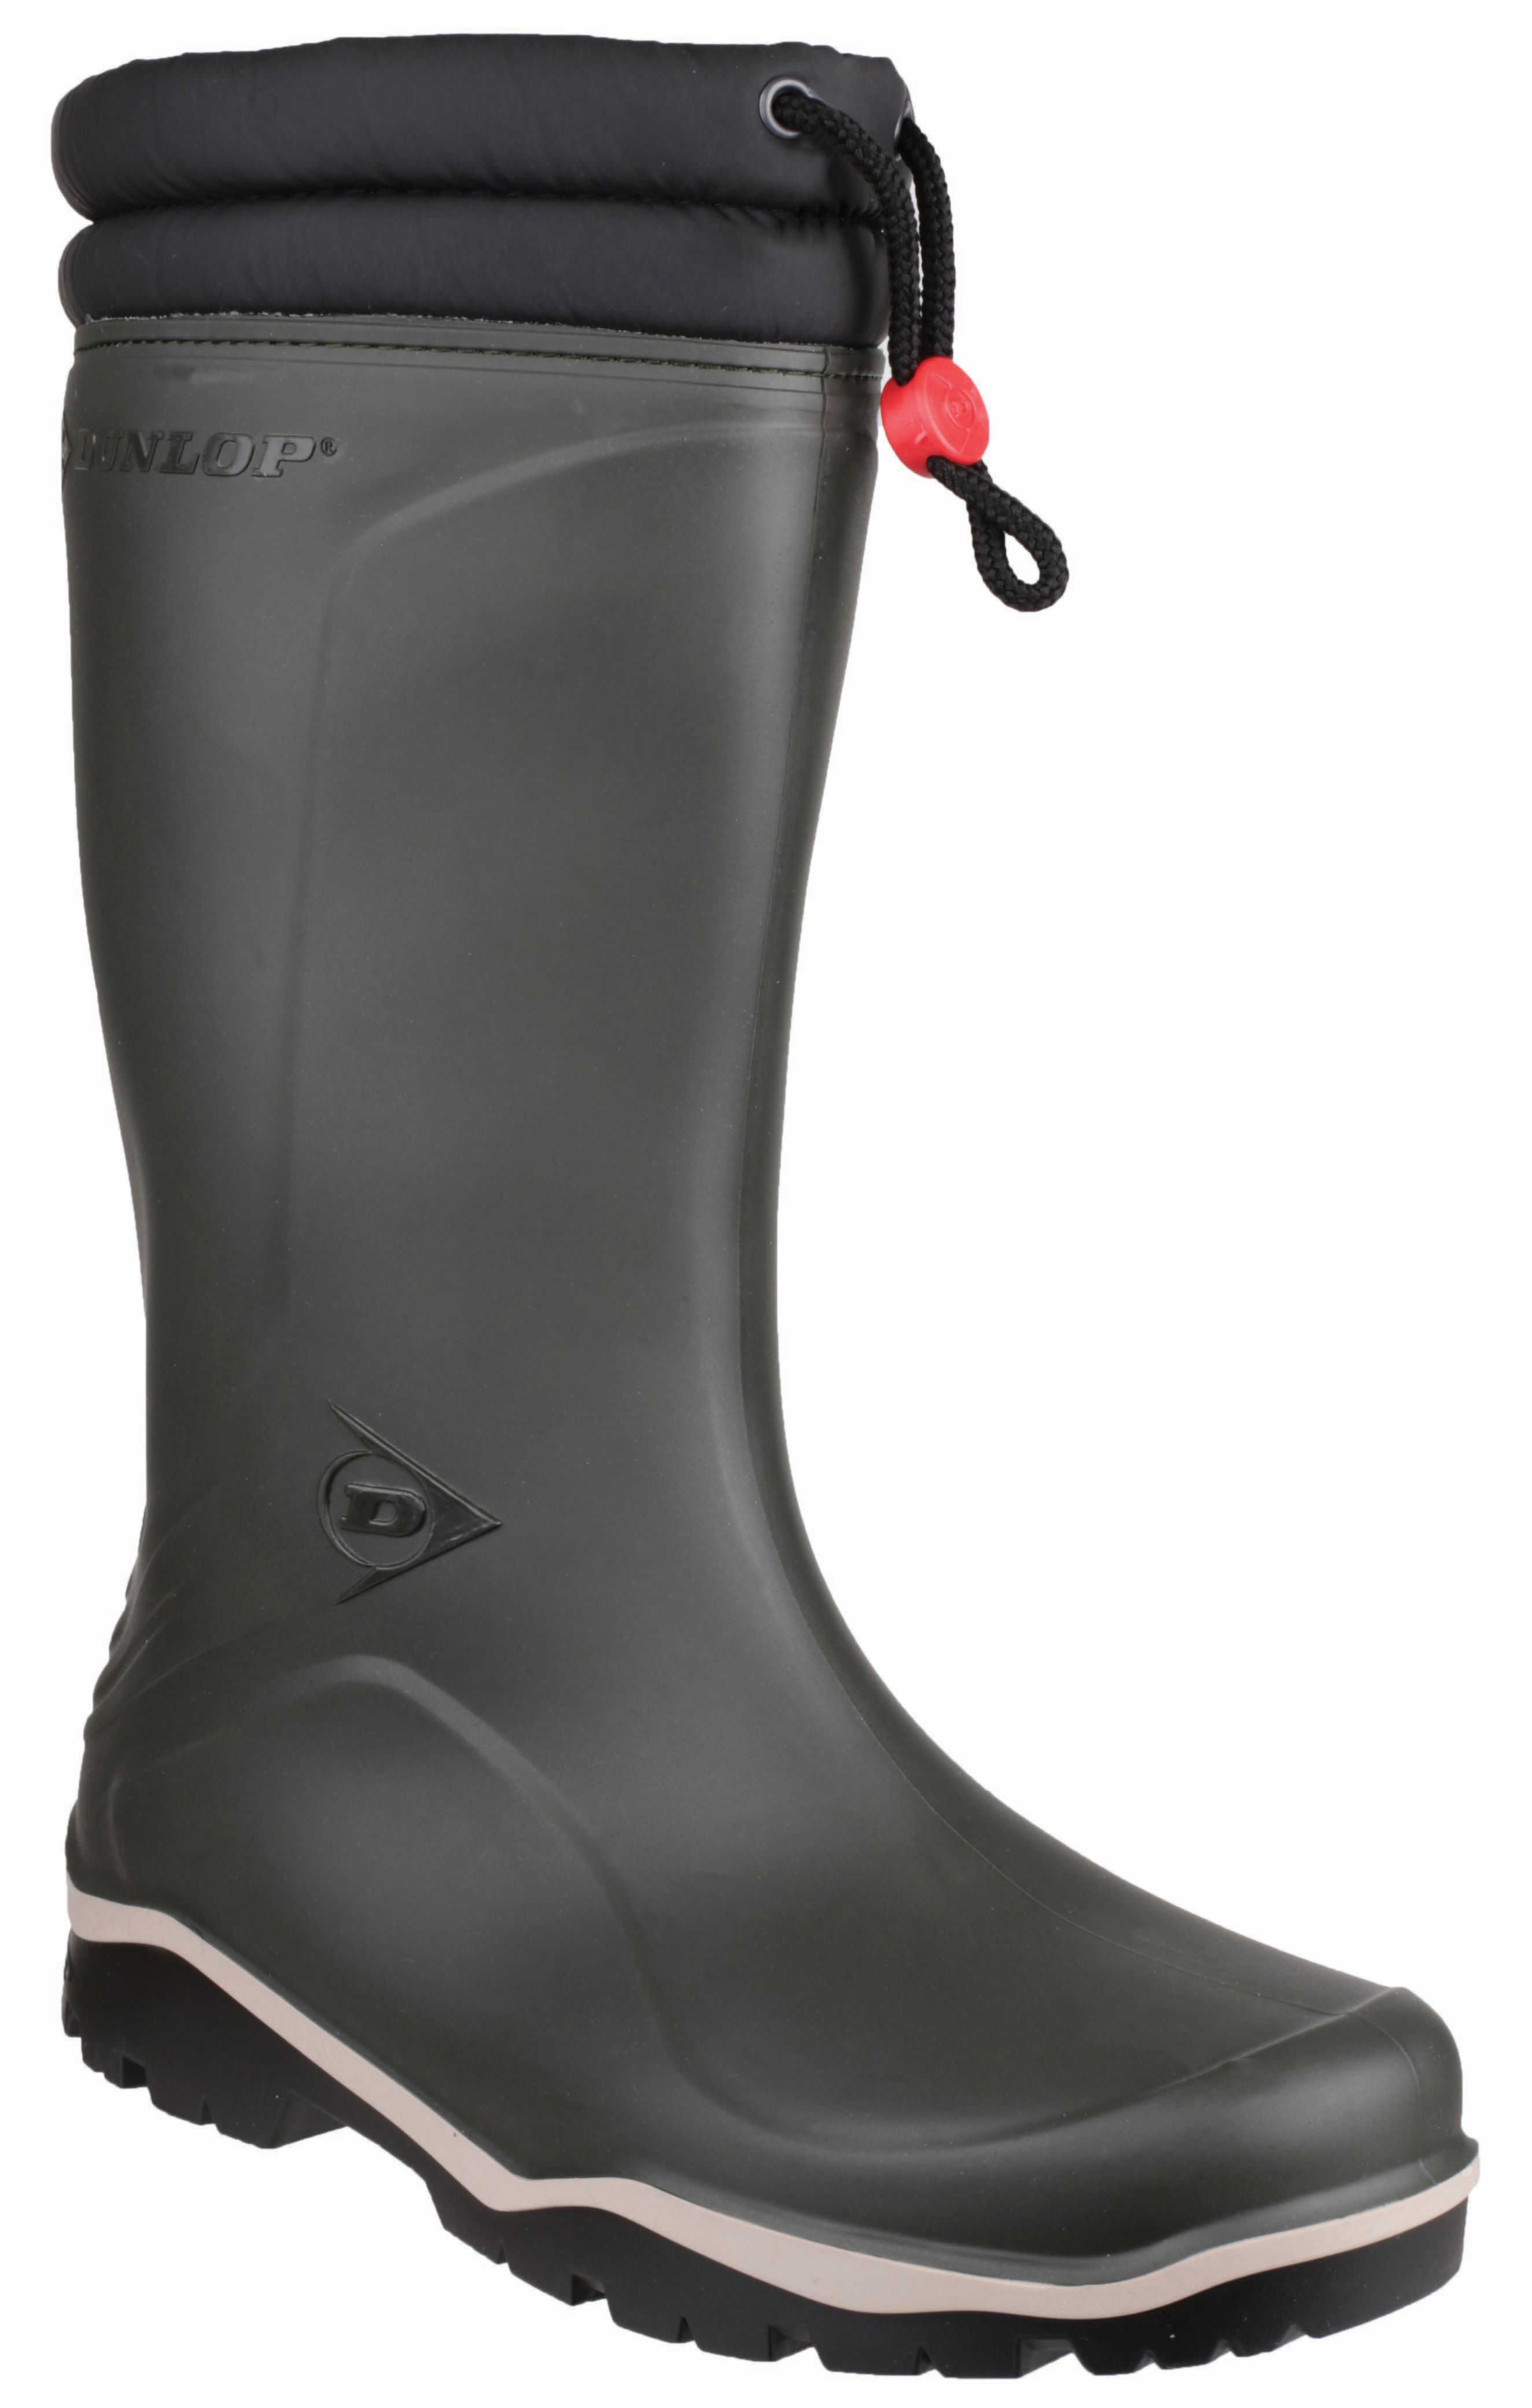 Dunlop Blizzard Winter Wellington Boot - Green Size 13